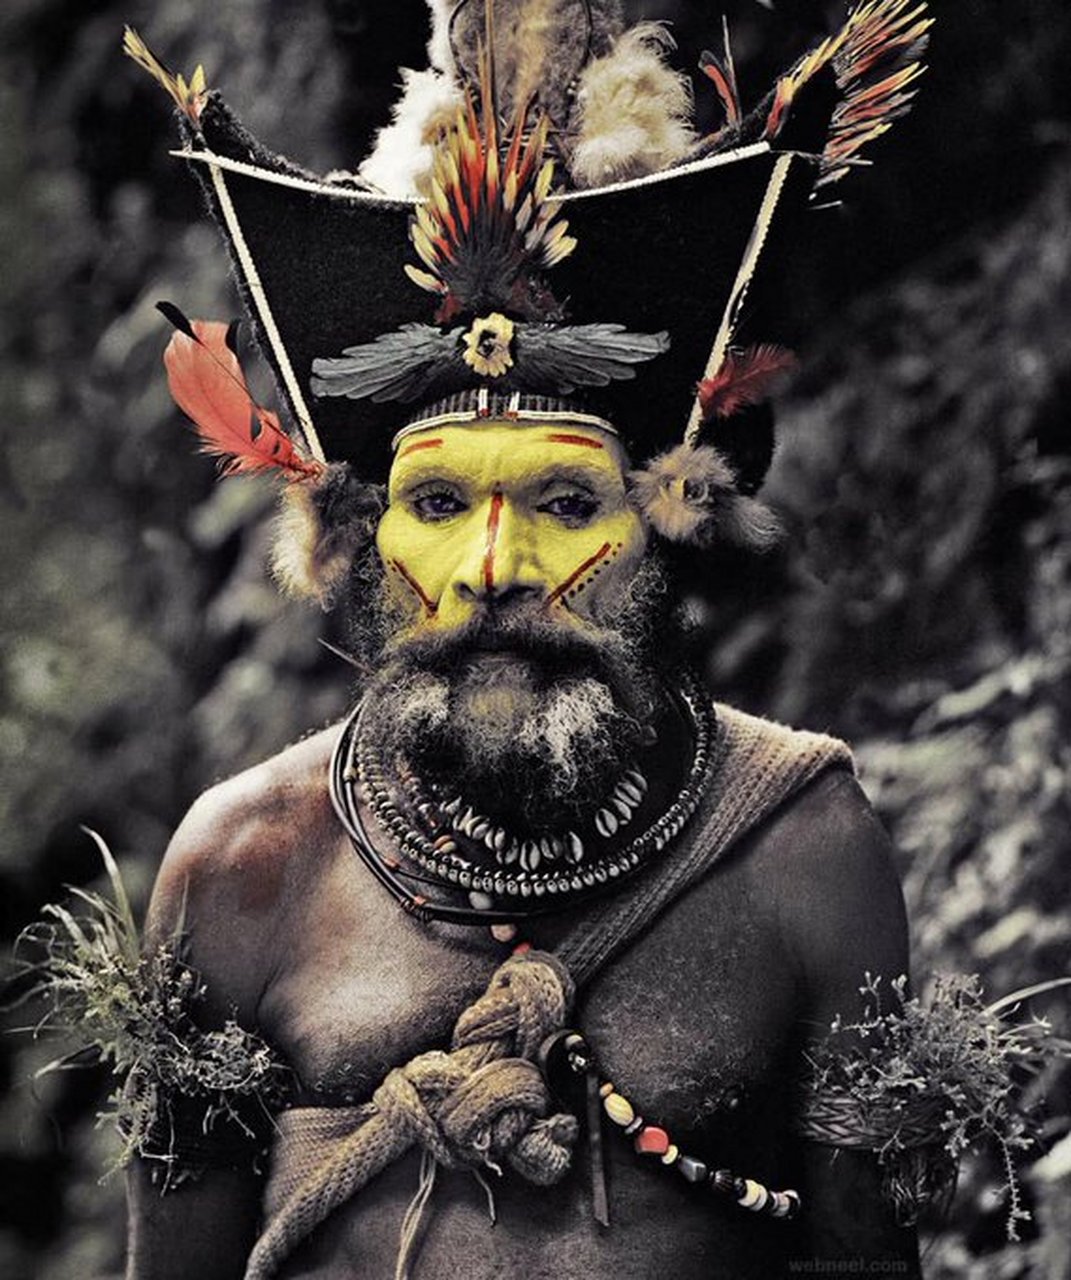 胡里人是生活在巴布亚新几内亚南部高地的土著民族